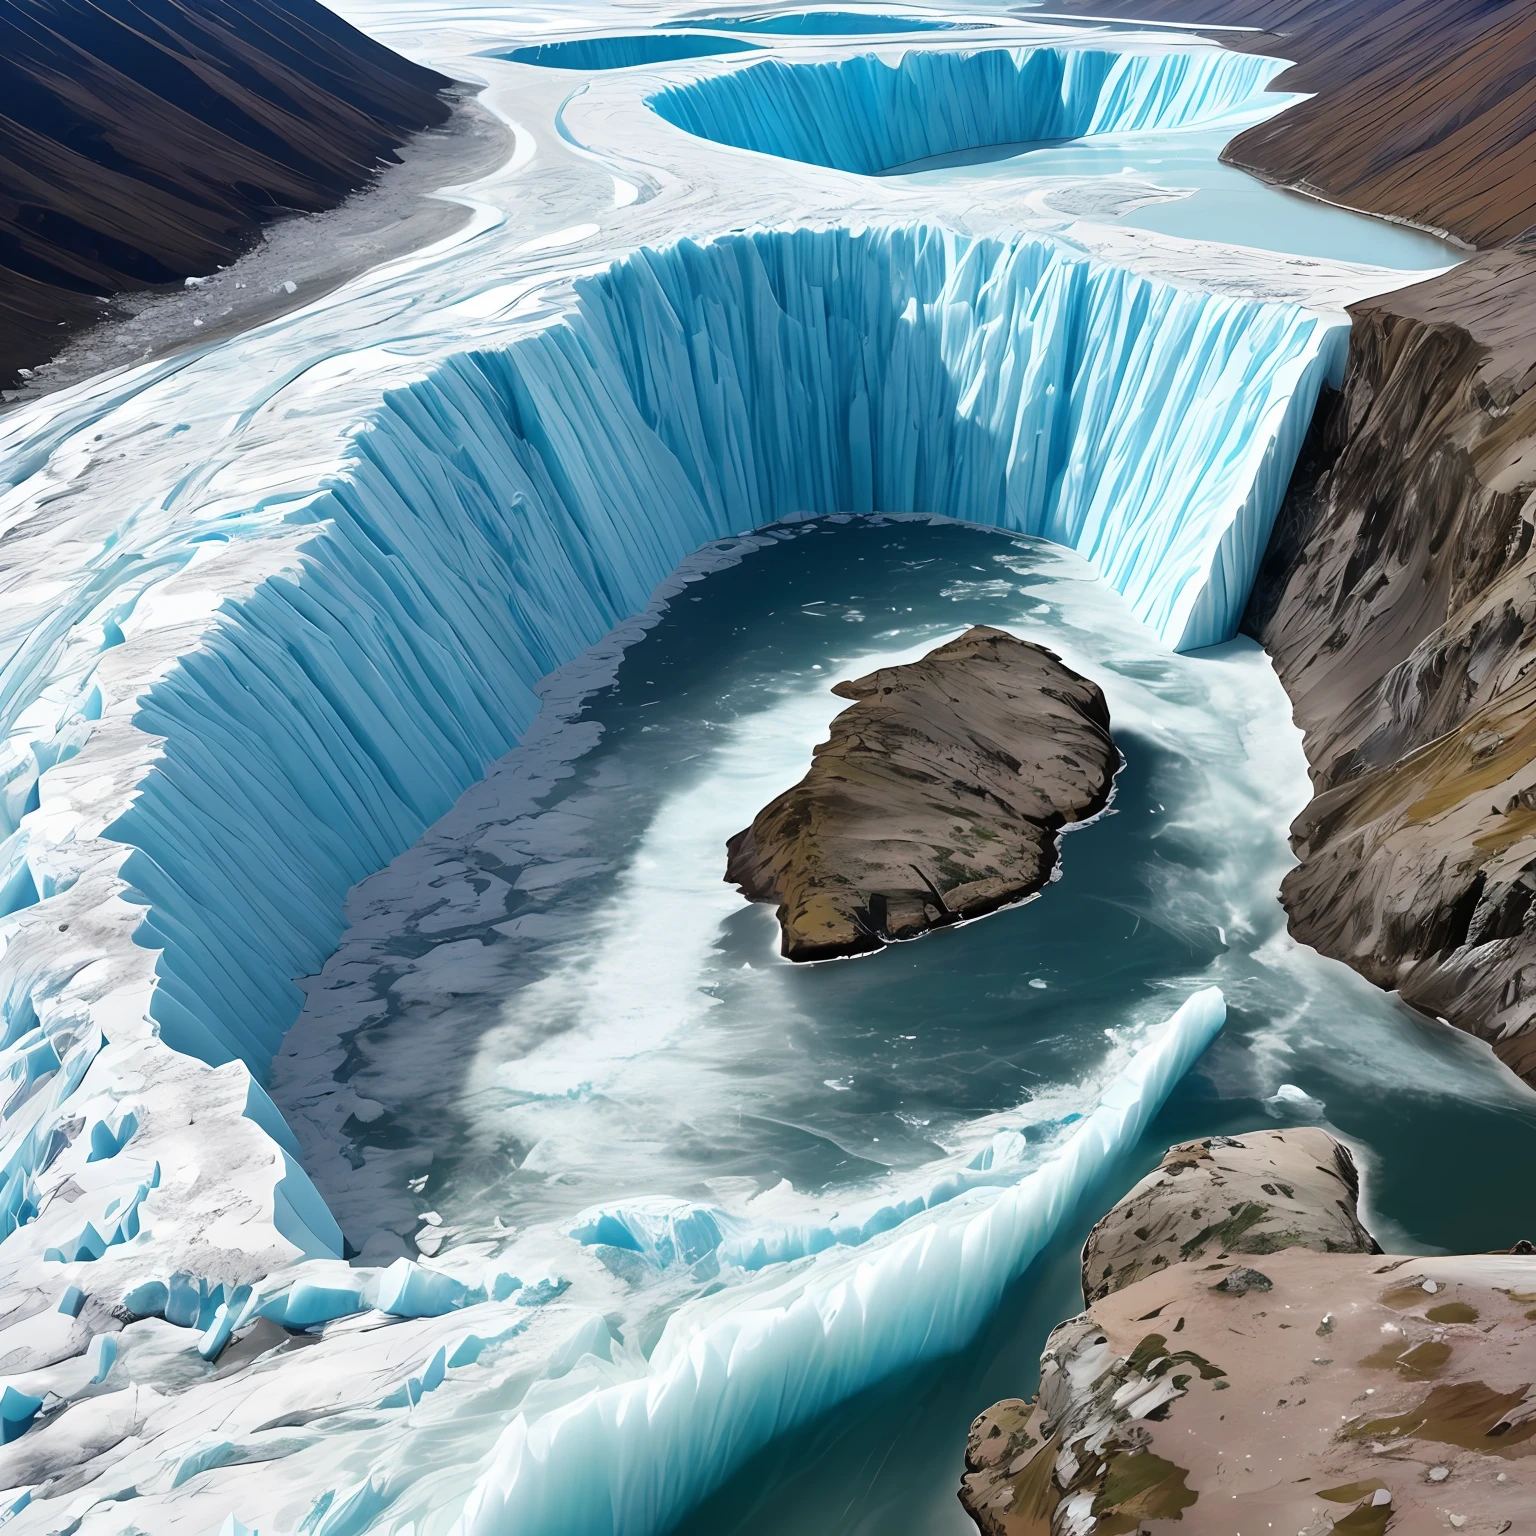 , in den arktischen Gletschern, Meerwasser durch starke Kräfte getrennt